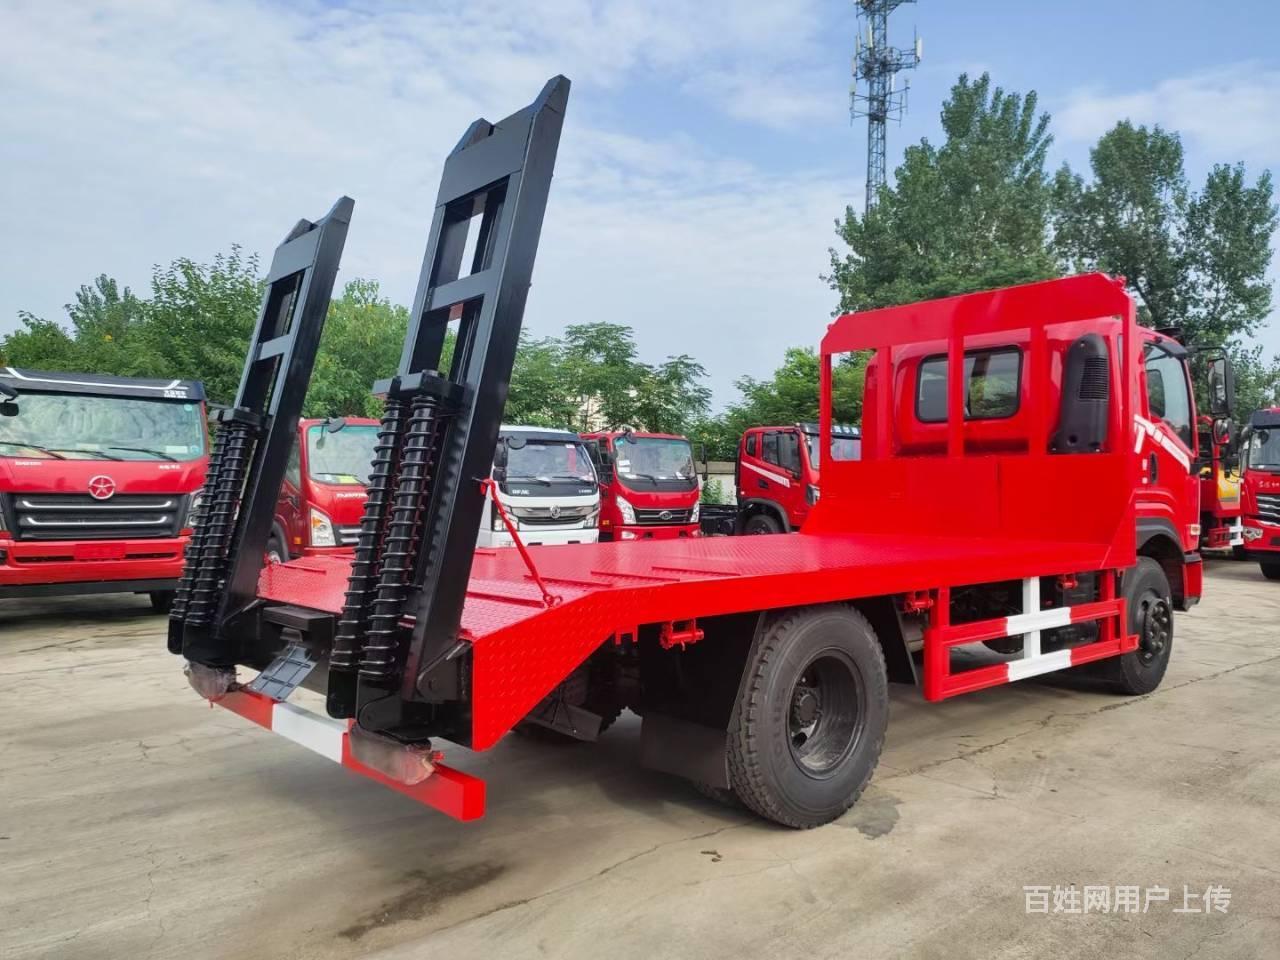 国六平板车厂家直销 拖6-15吨挖机拖板车 可分期